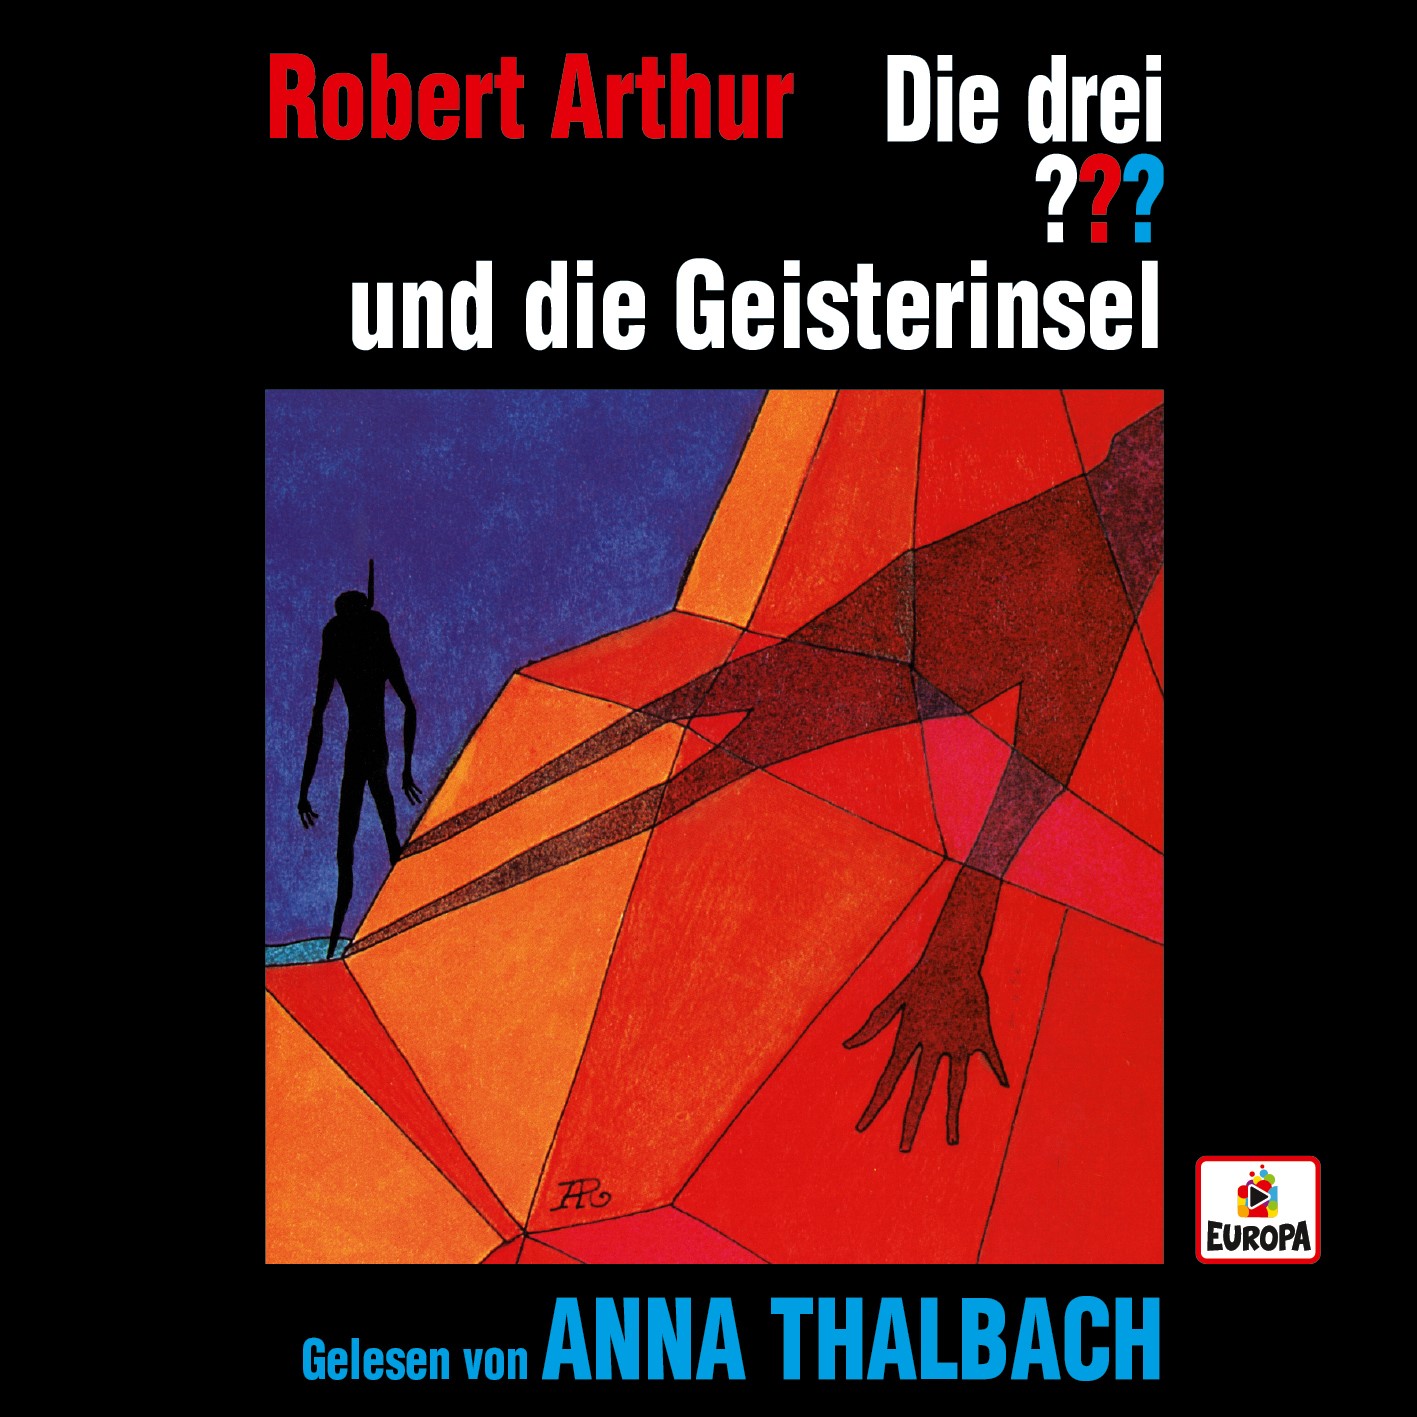 Neues Hörbuch mit Anna Thalbach! - Die Hörbuchreihe der drei ??? geht in die nächste Runde. Anna Thalbach liest ... ...